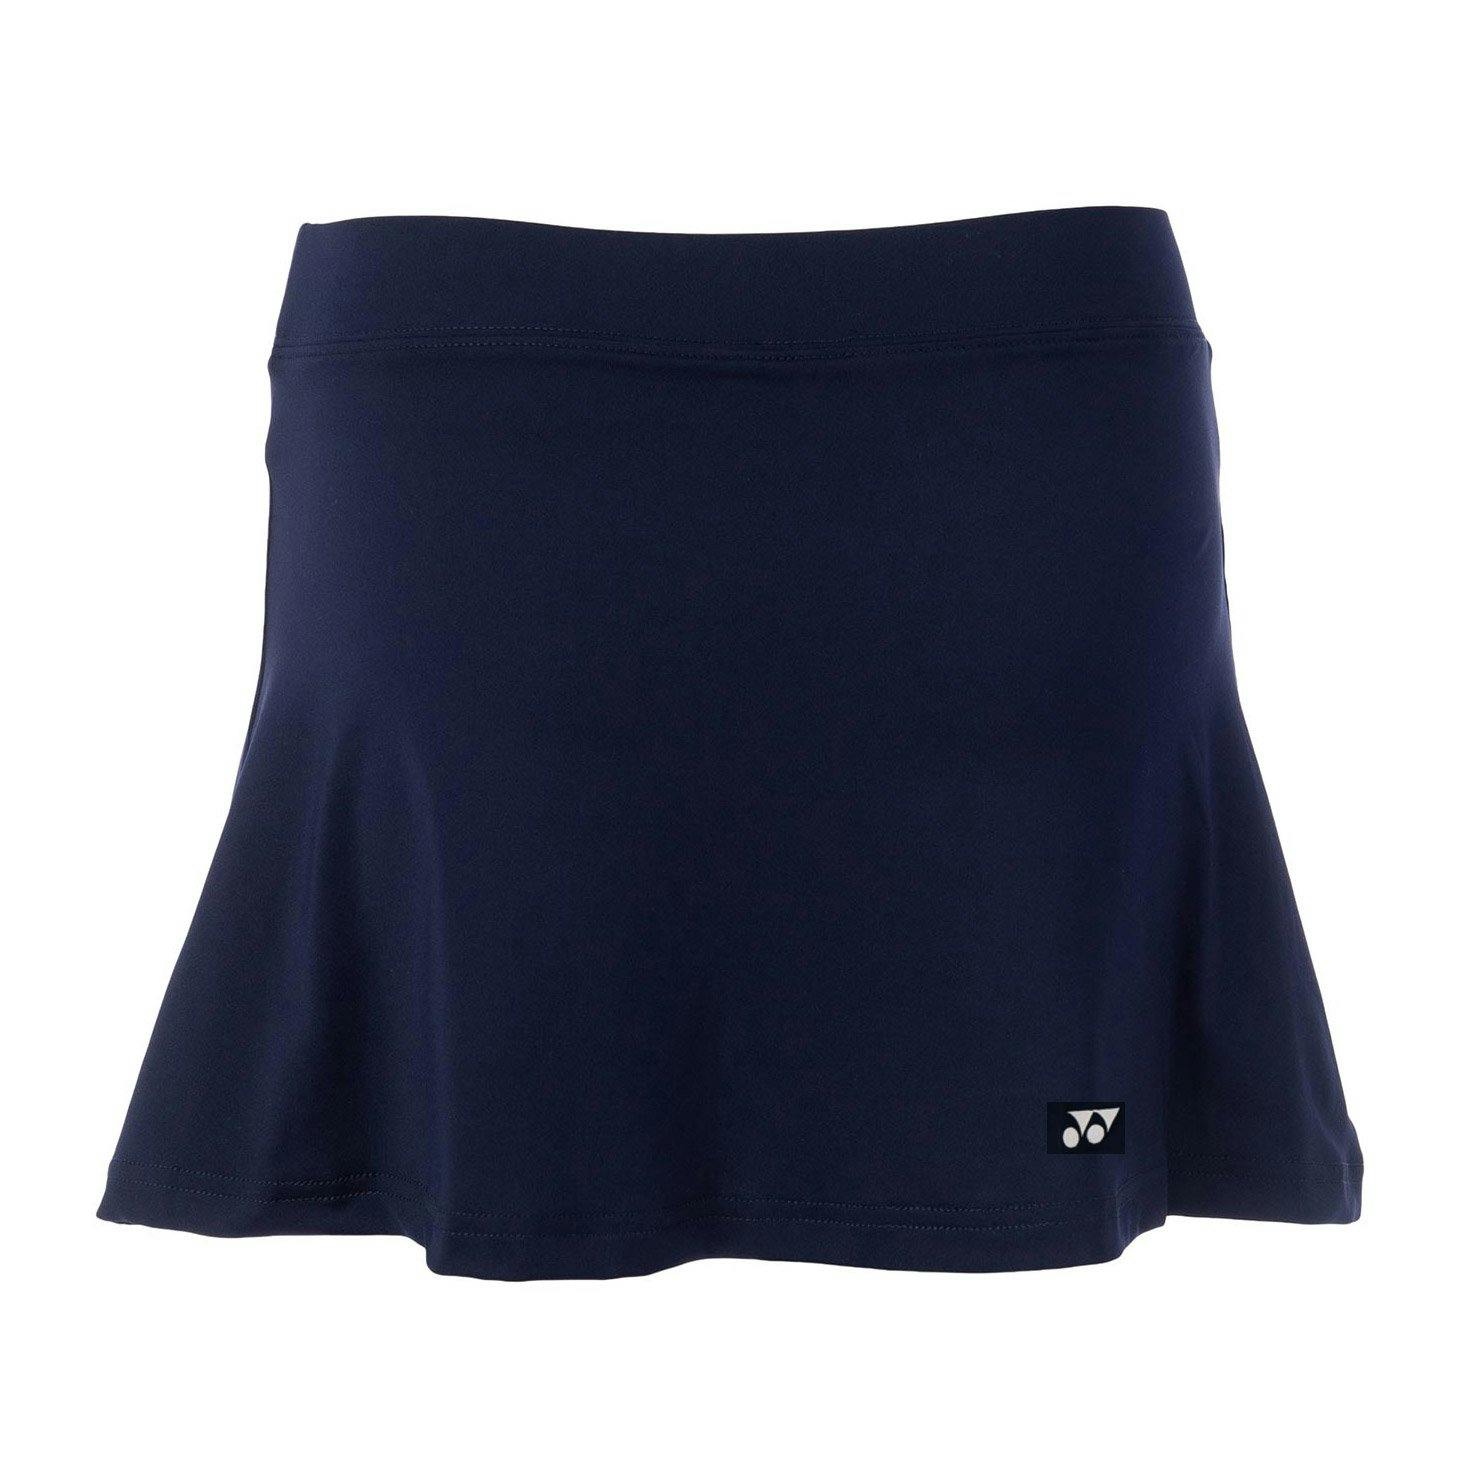 Yonex Womens Tennis Skirt